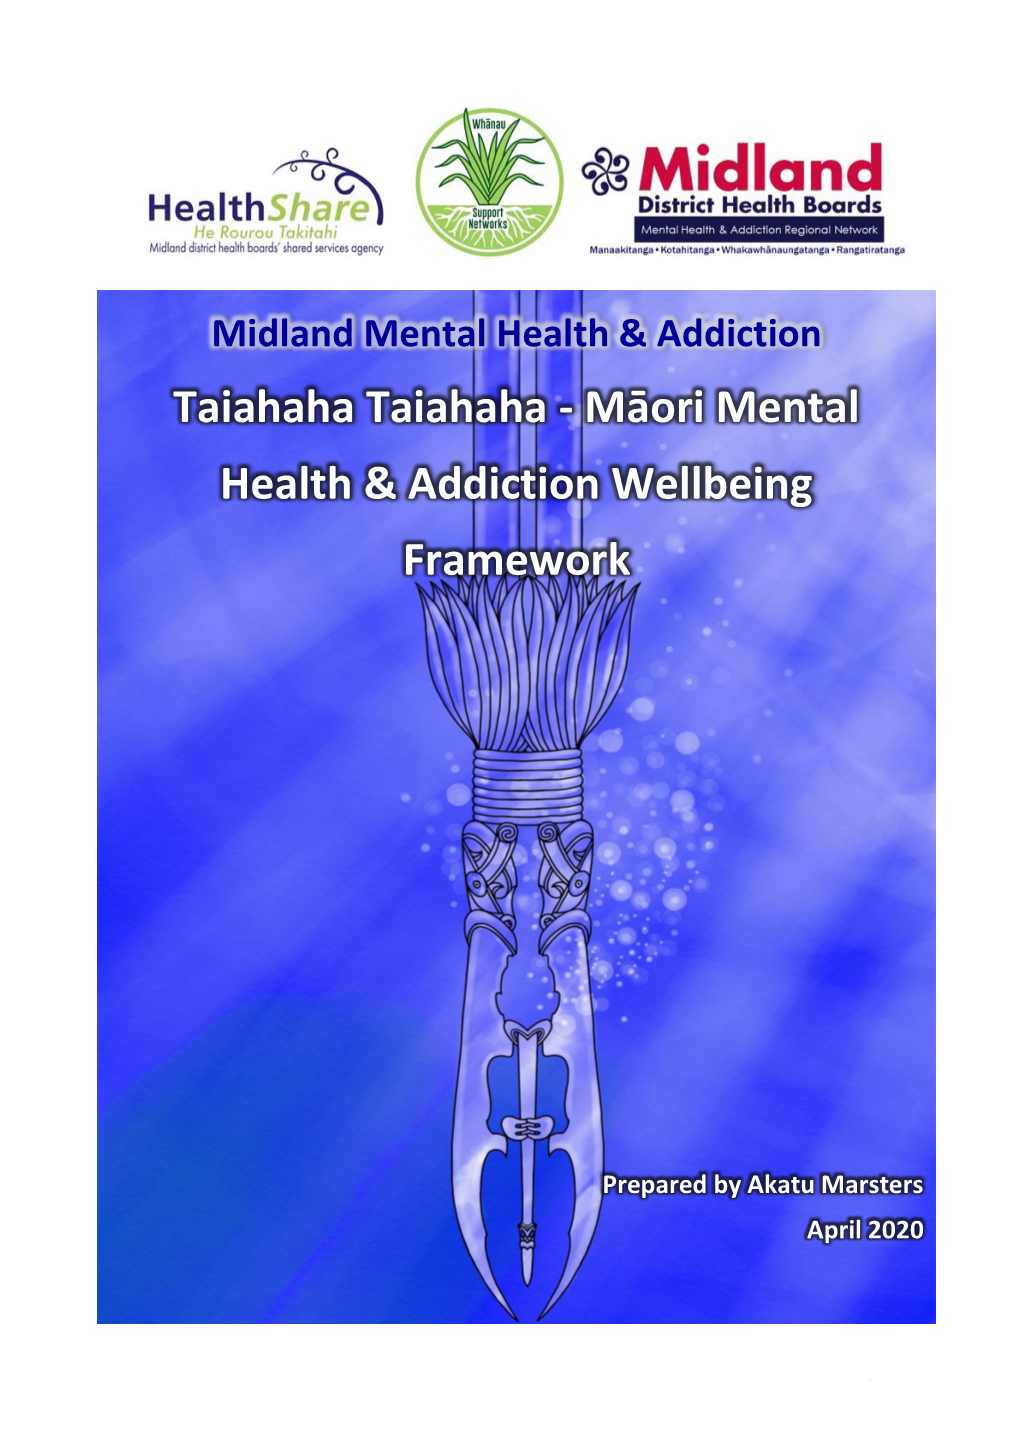 Maori Mental Health & Addiction Wellbeing Framework